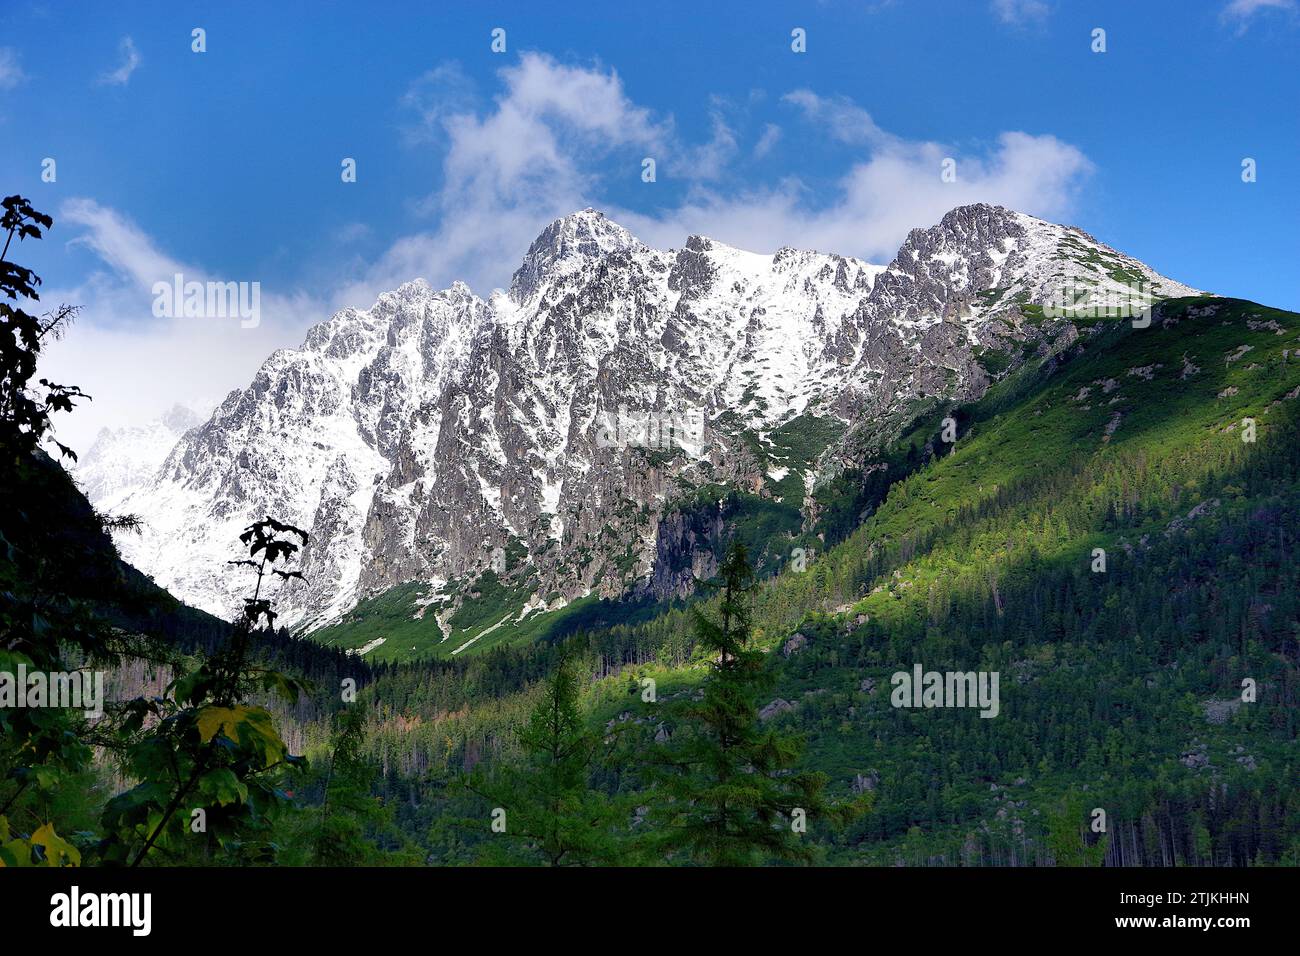 Slovakia's High Tatras mountains. Hrebienok - walk to Vodop‡dy StudenŽho potoka - Near Hrebienok, Slovakia. Credit: JHelebrant Stock Photo